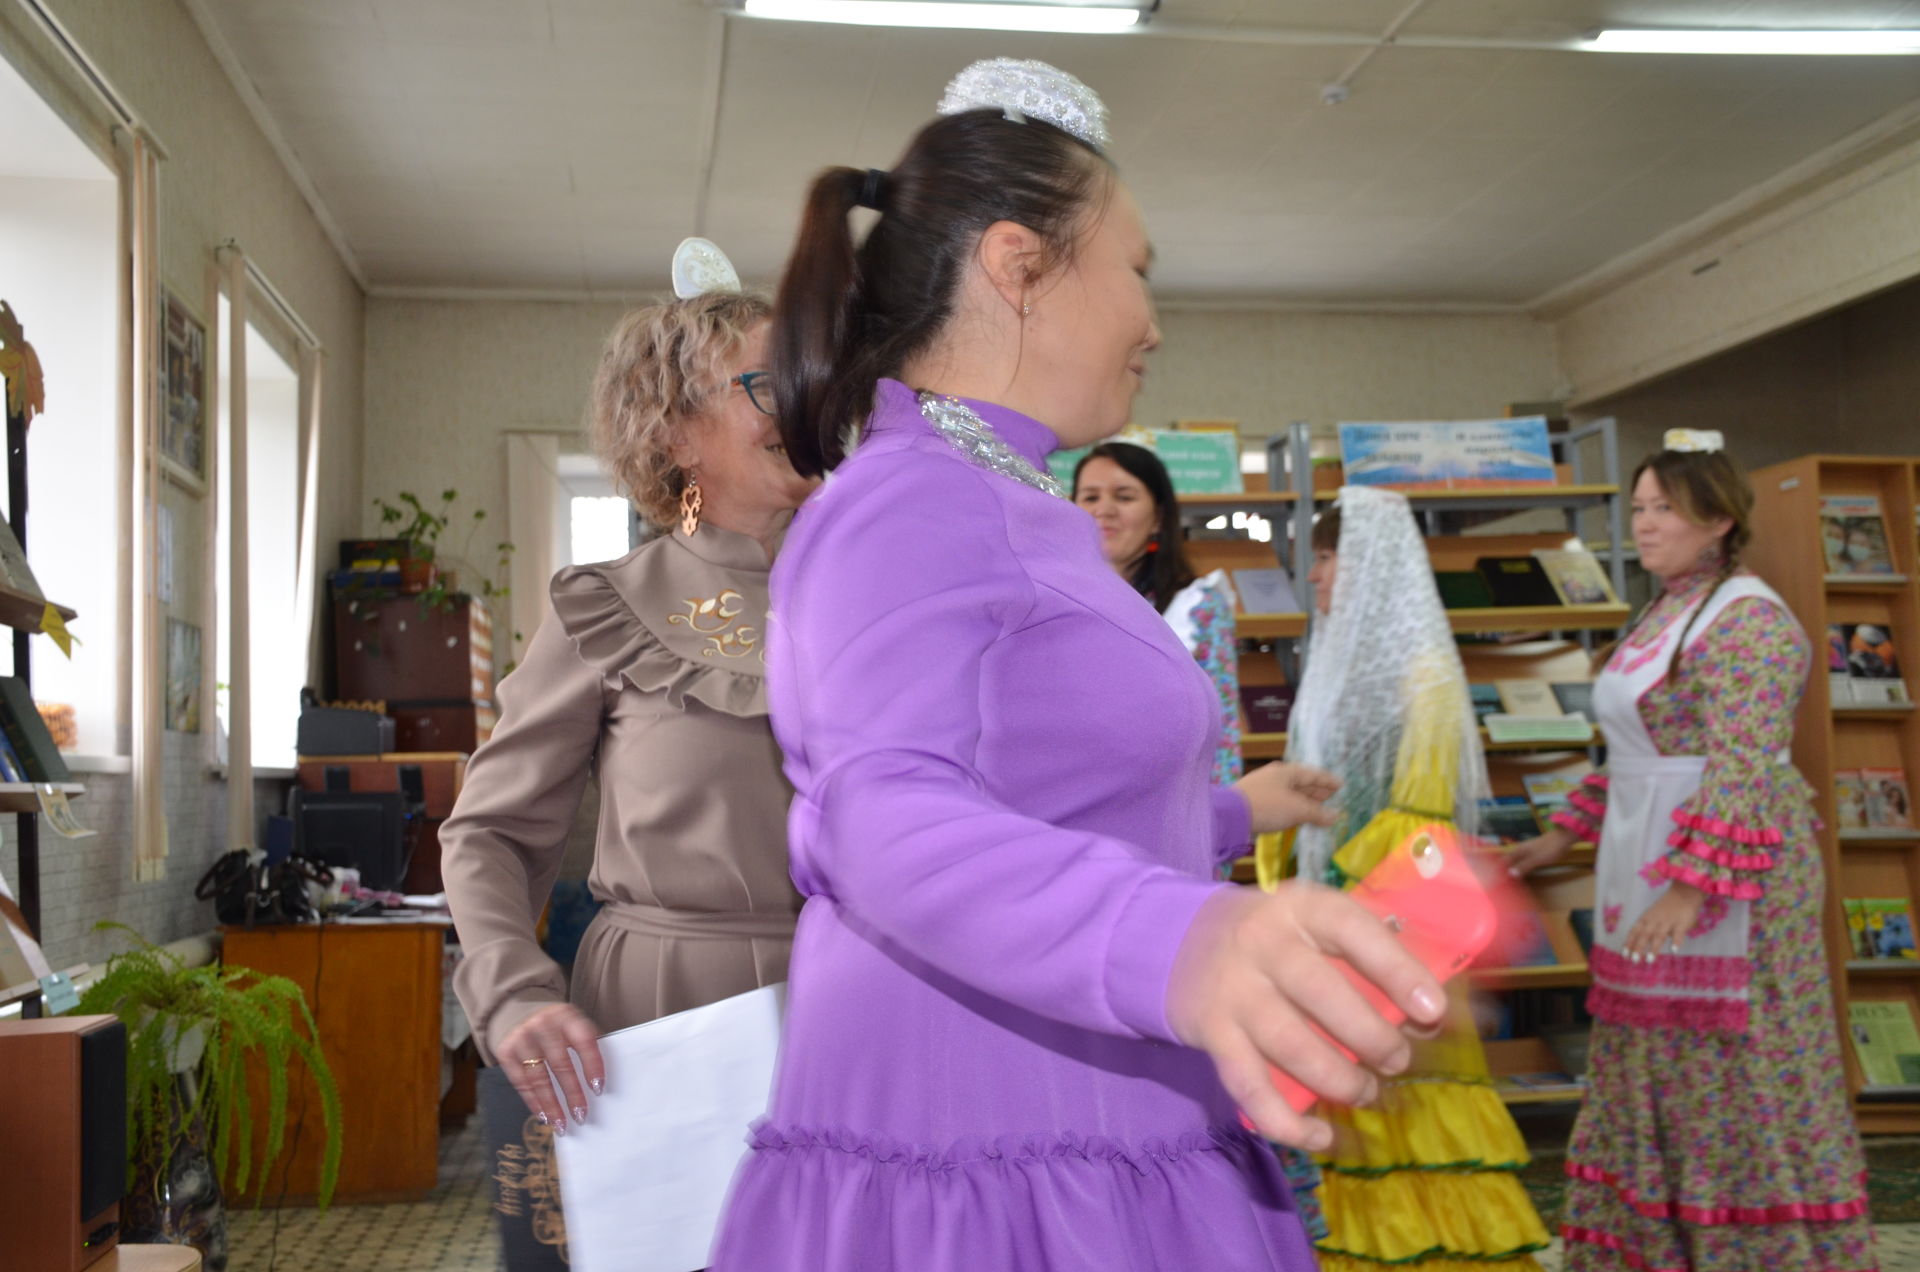 Ижауның "Ак калфак" оешмасы вәкилләре Әгерҗе районында милләттәшләребез белән очраштылар